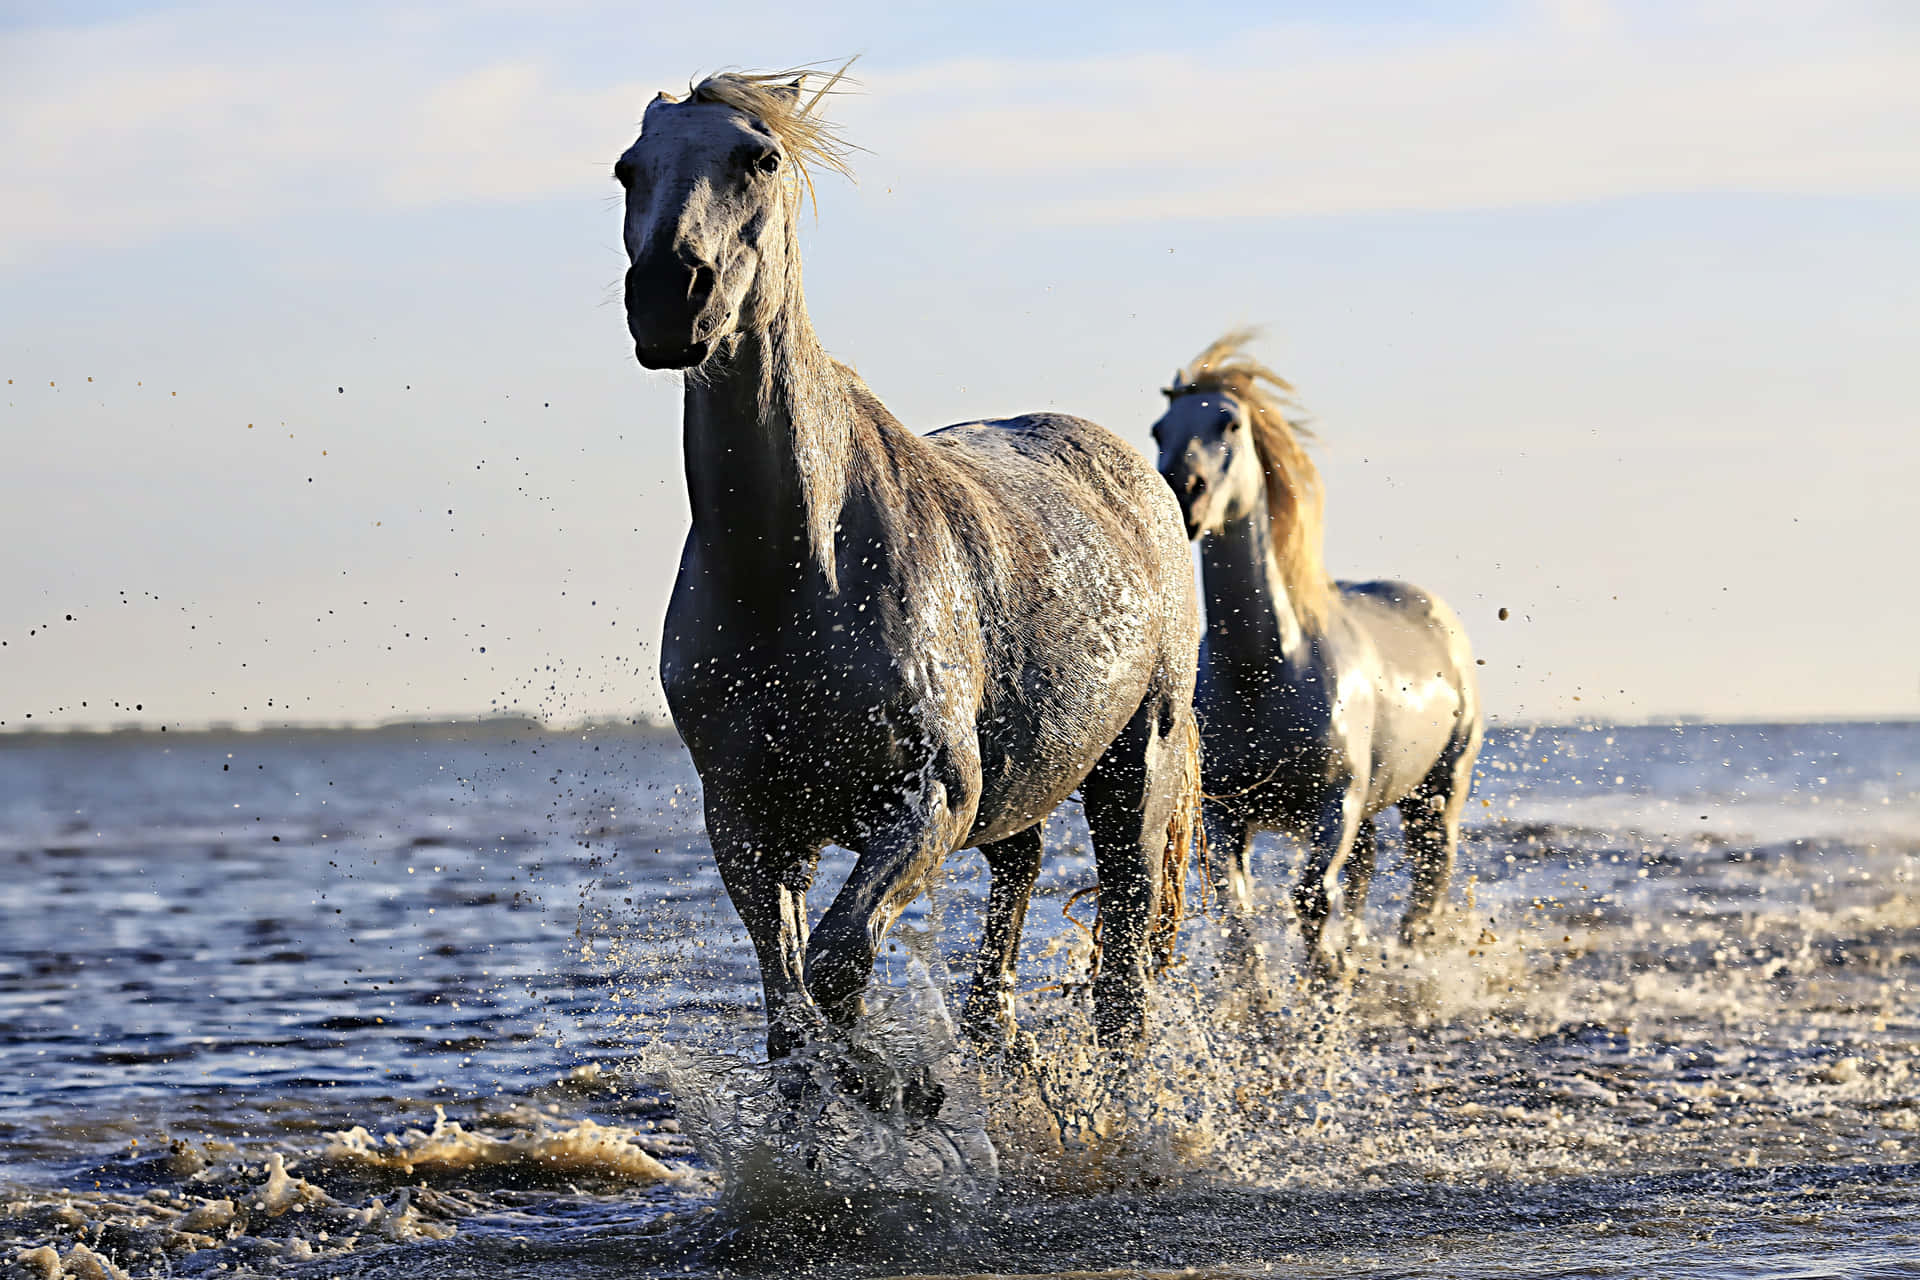 Fotograffängt Die Majestät Wunderschöner Pferde In Einer Atemberaubenden Landschaft Ein.